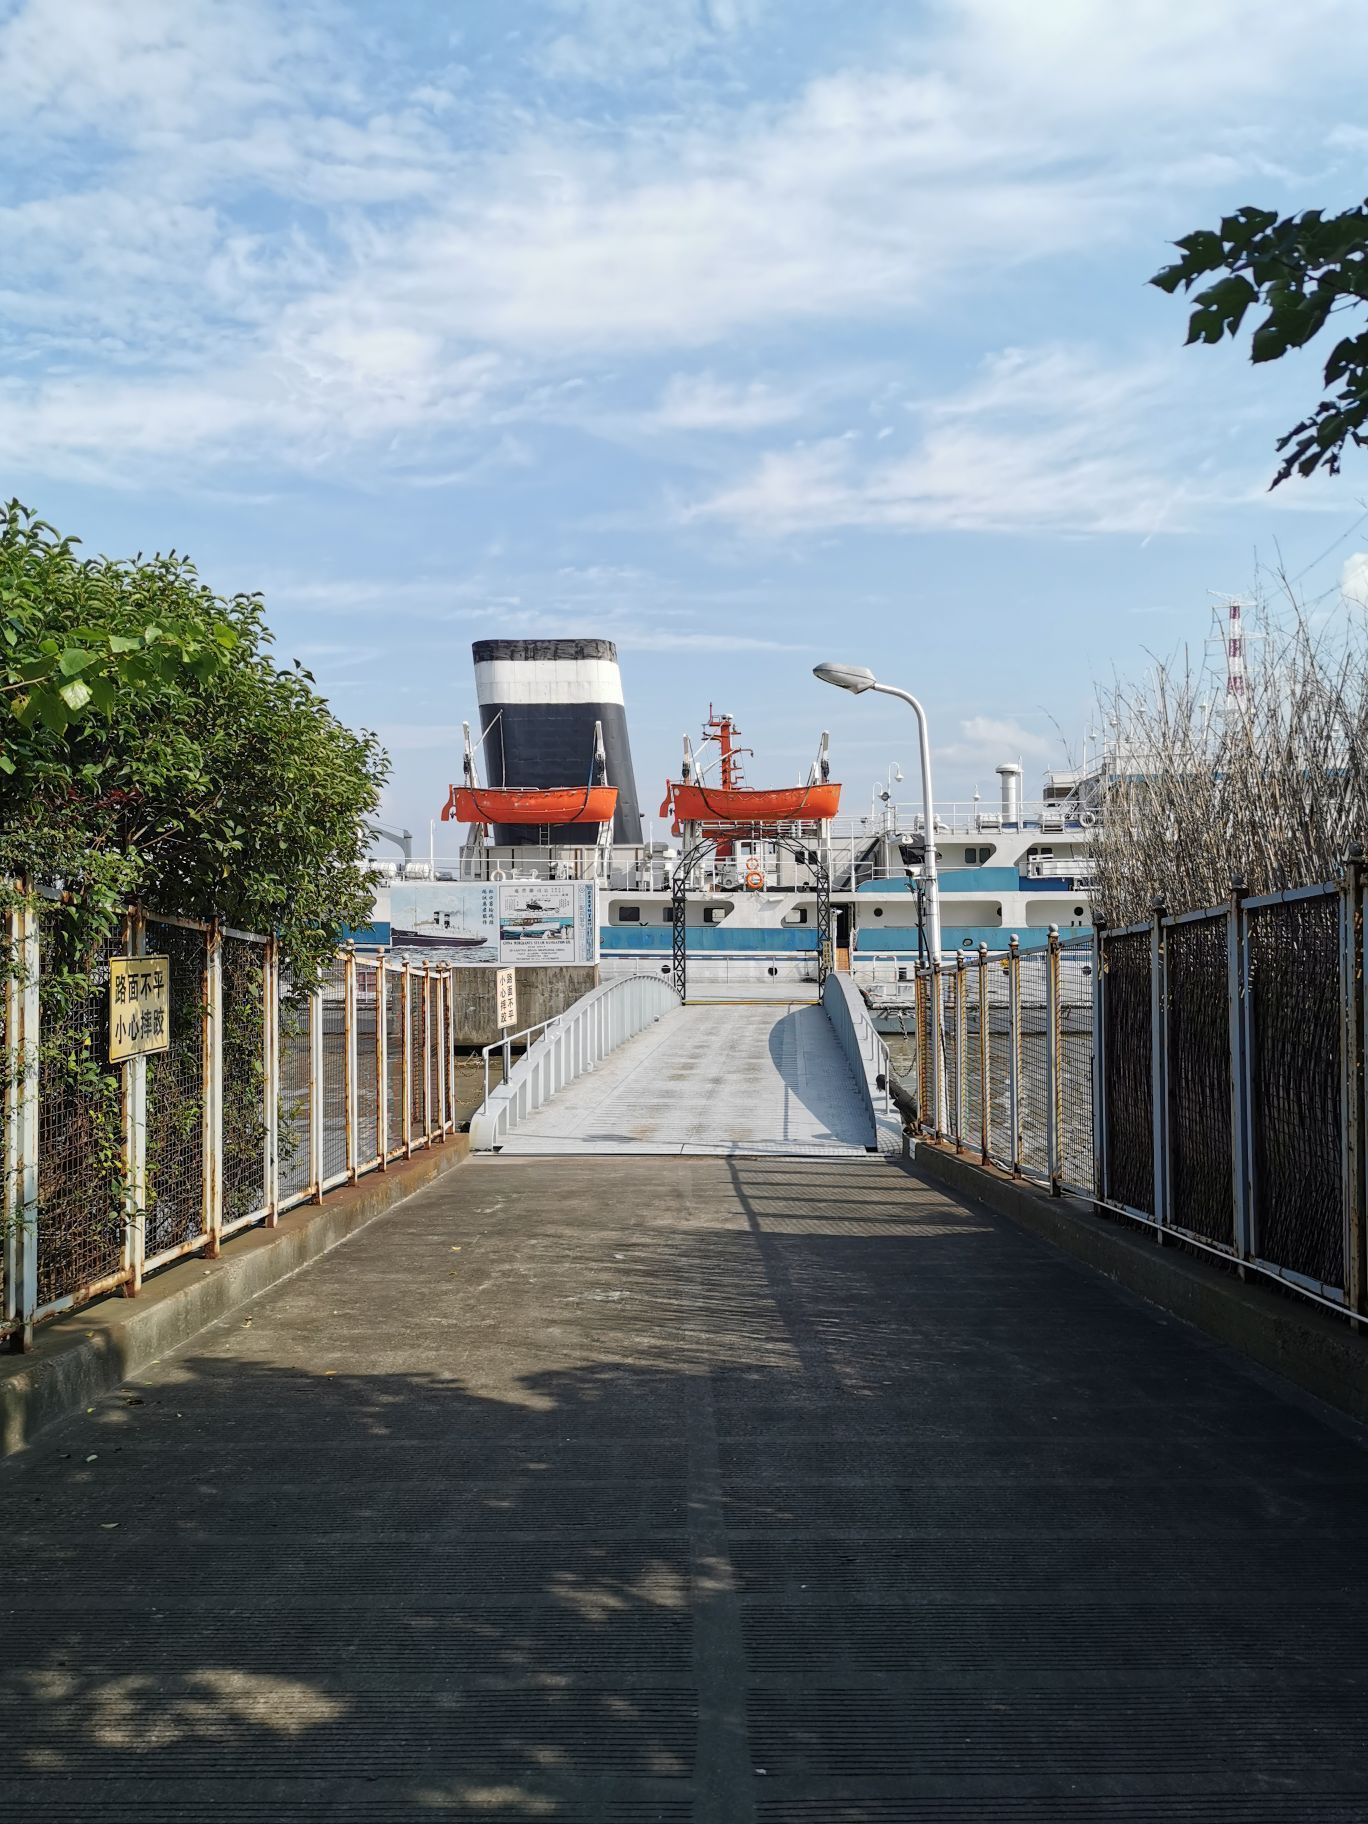 上海吴淞国际邮轮码头-中关村在线摄影论坛